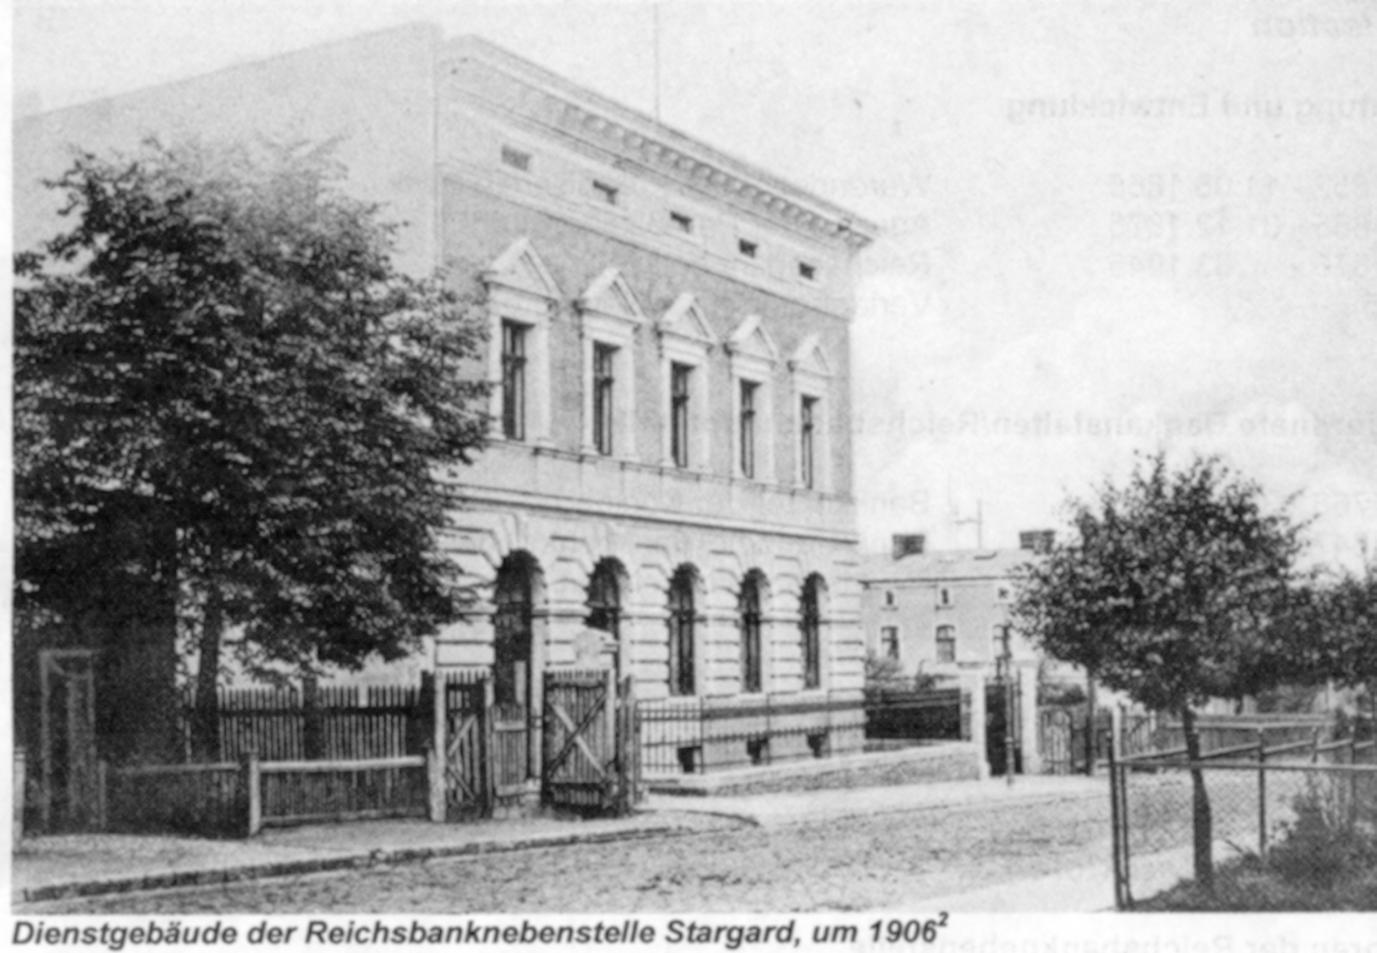 Reichsbanknebenstelle 1906 in Stargara